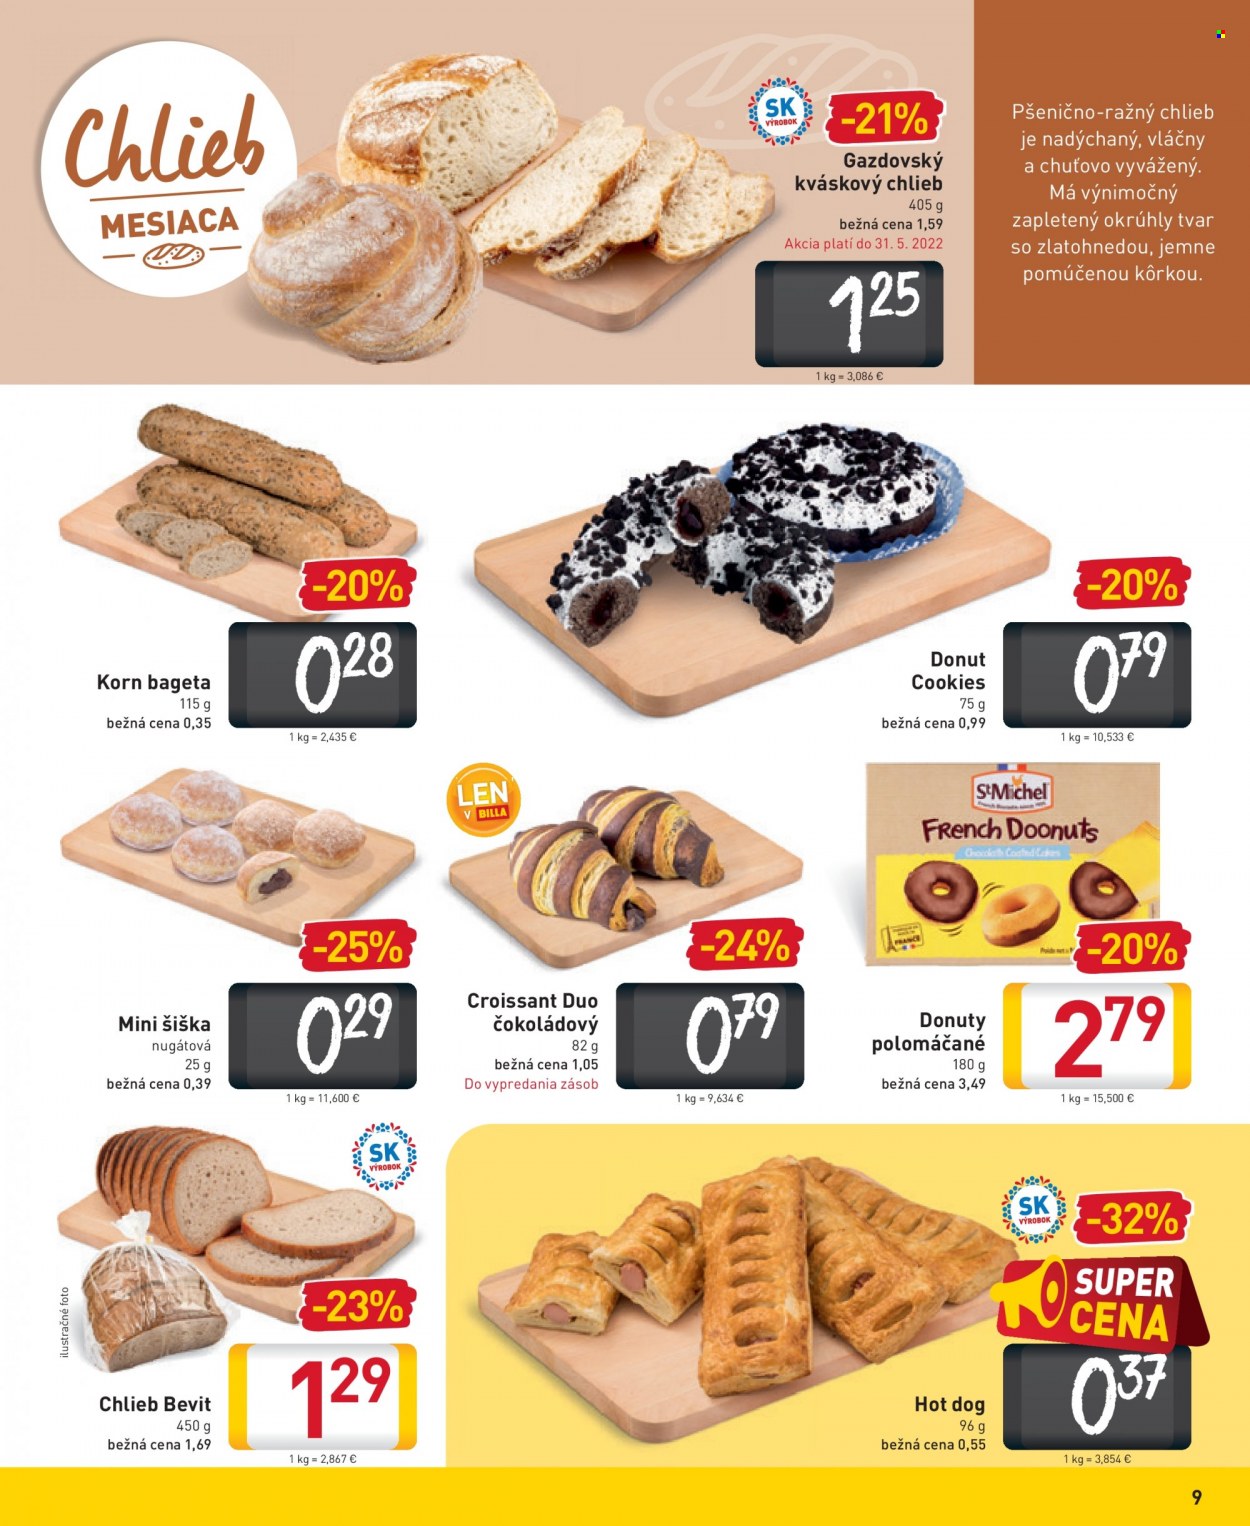 thumbnail - Leták Billa - 18.5.2022 - 24.5.2022 - Produkty v akcii - chlieb, gazdovský chlieb, kváskový chlieb, pečivo, slané pečivo, bageta, donut, sladké pečivo, šiška, croissant, hot dog. Strana 9.